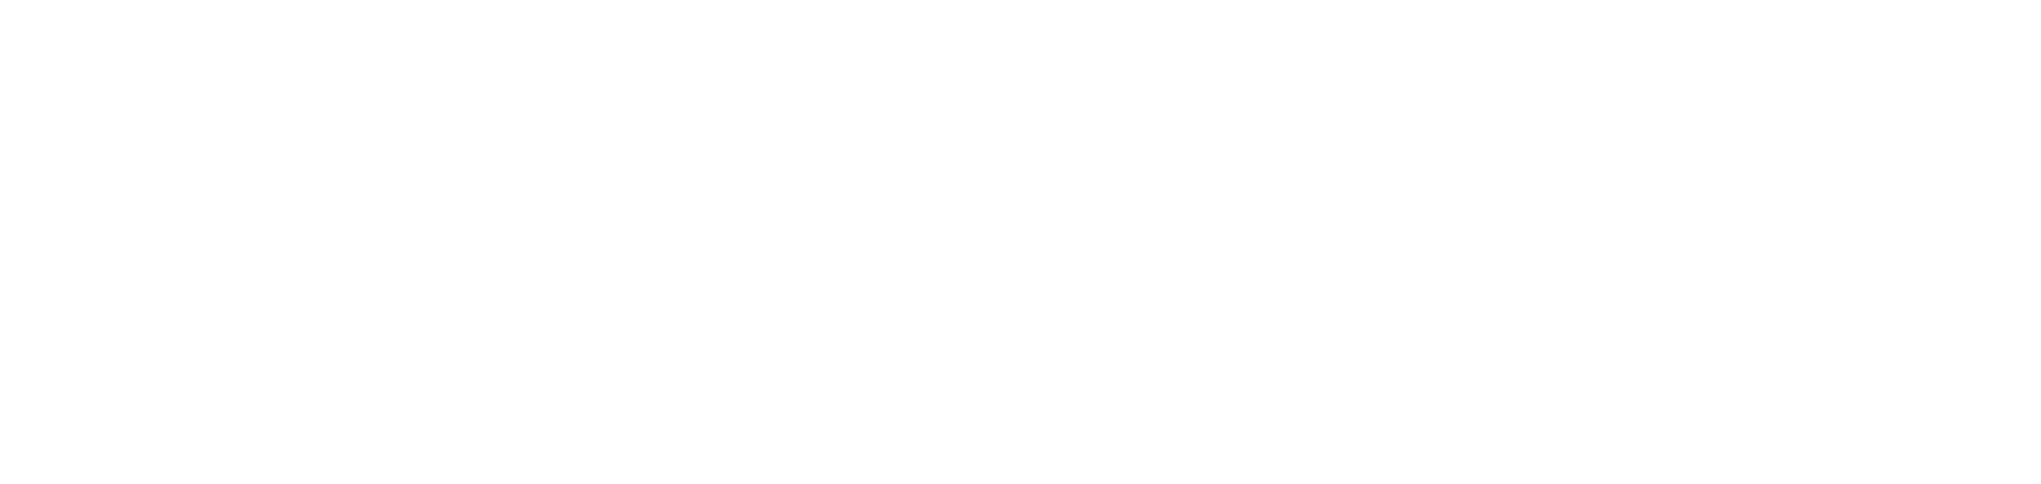 Logo_Motorbootschule-Solothurn_mit_Neptun-weiss-schmal-web